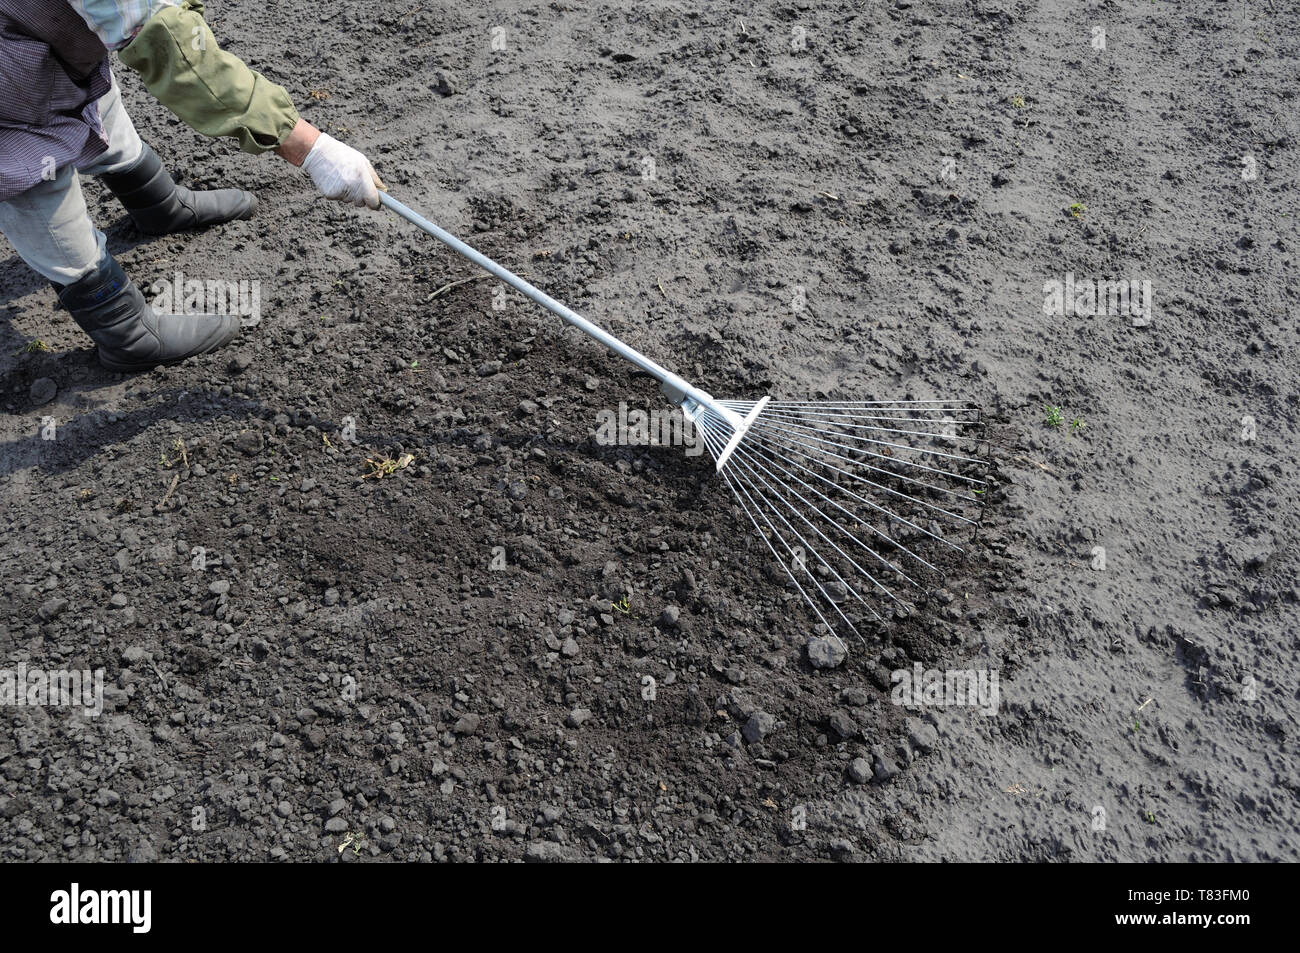 Giardiniere a rastrellare la massa con un rastrello in orto, preparare il terreno prima che le operazioni di semina Foto Stock